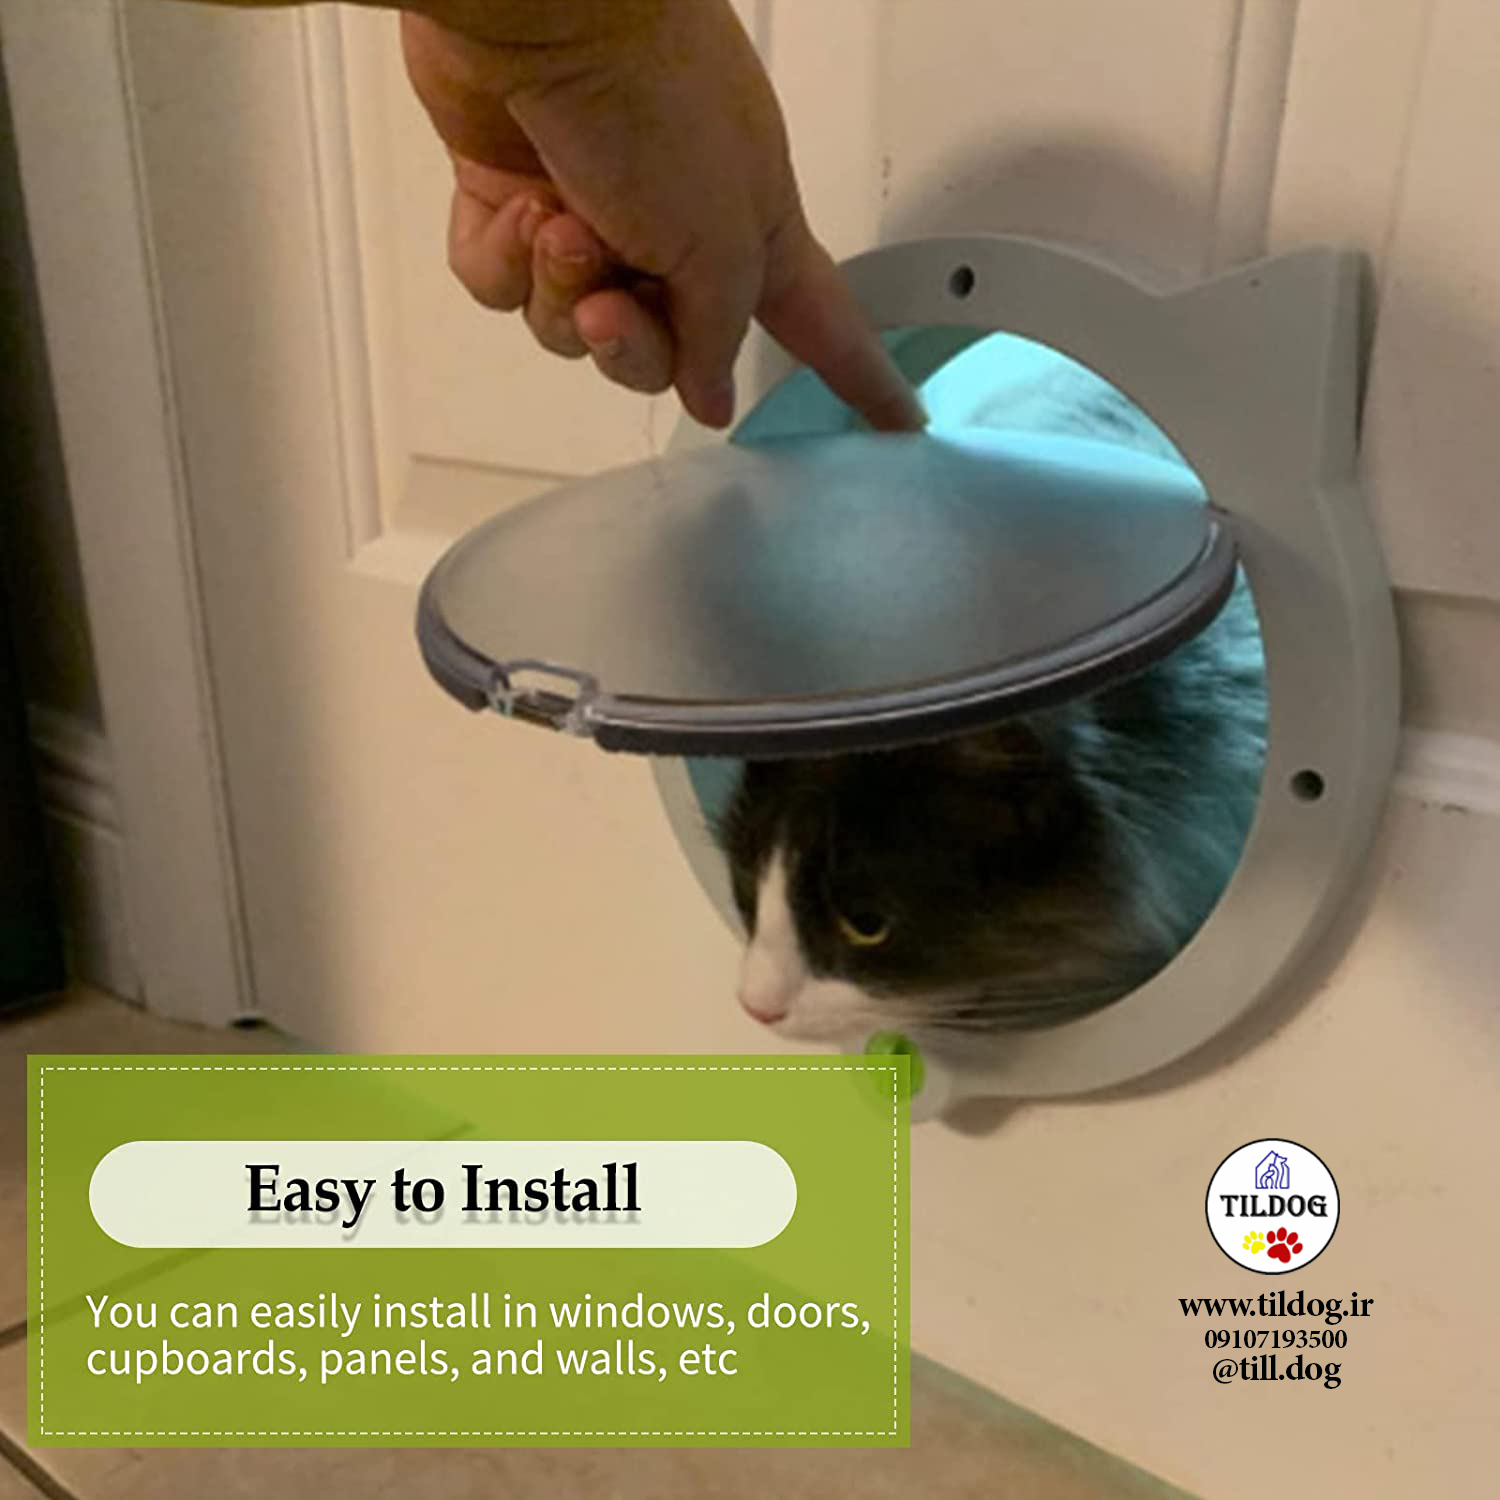 طراحی قفل]درب گربه دارای قفل است، شما به راحتی می توانید ورود و خروج حیوان خانگی خود را کنترل کنید.